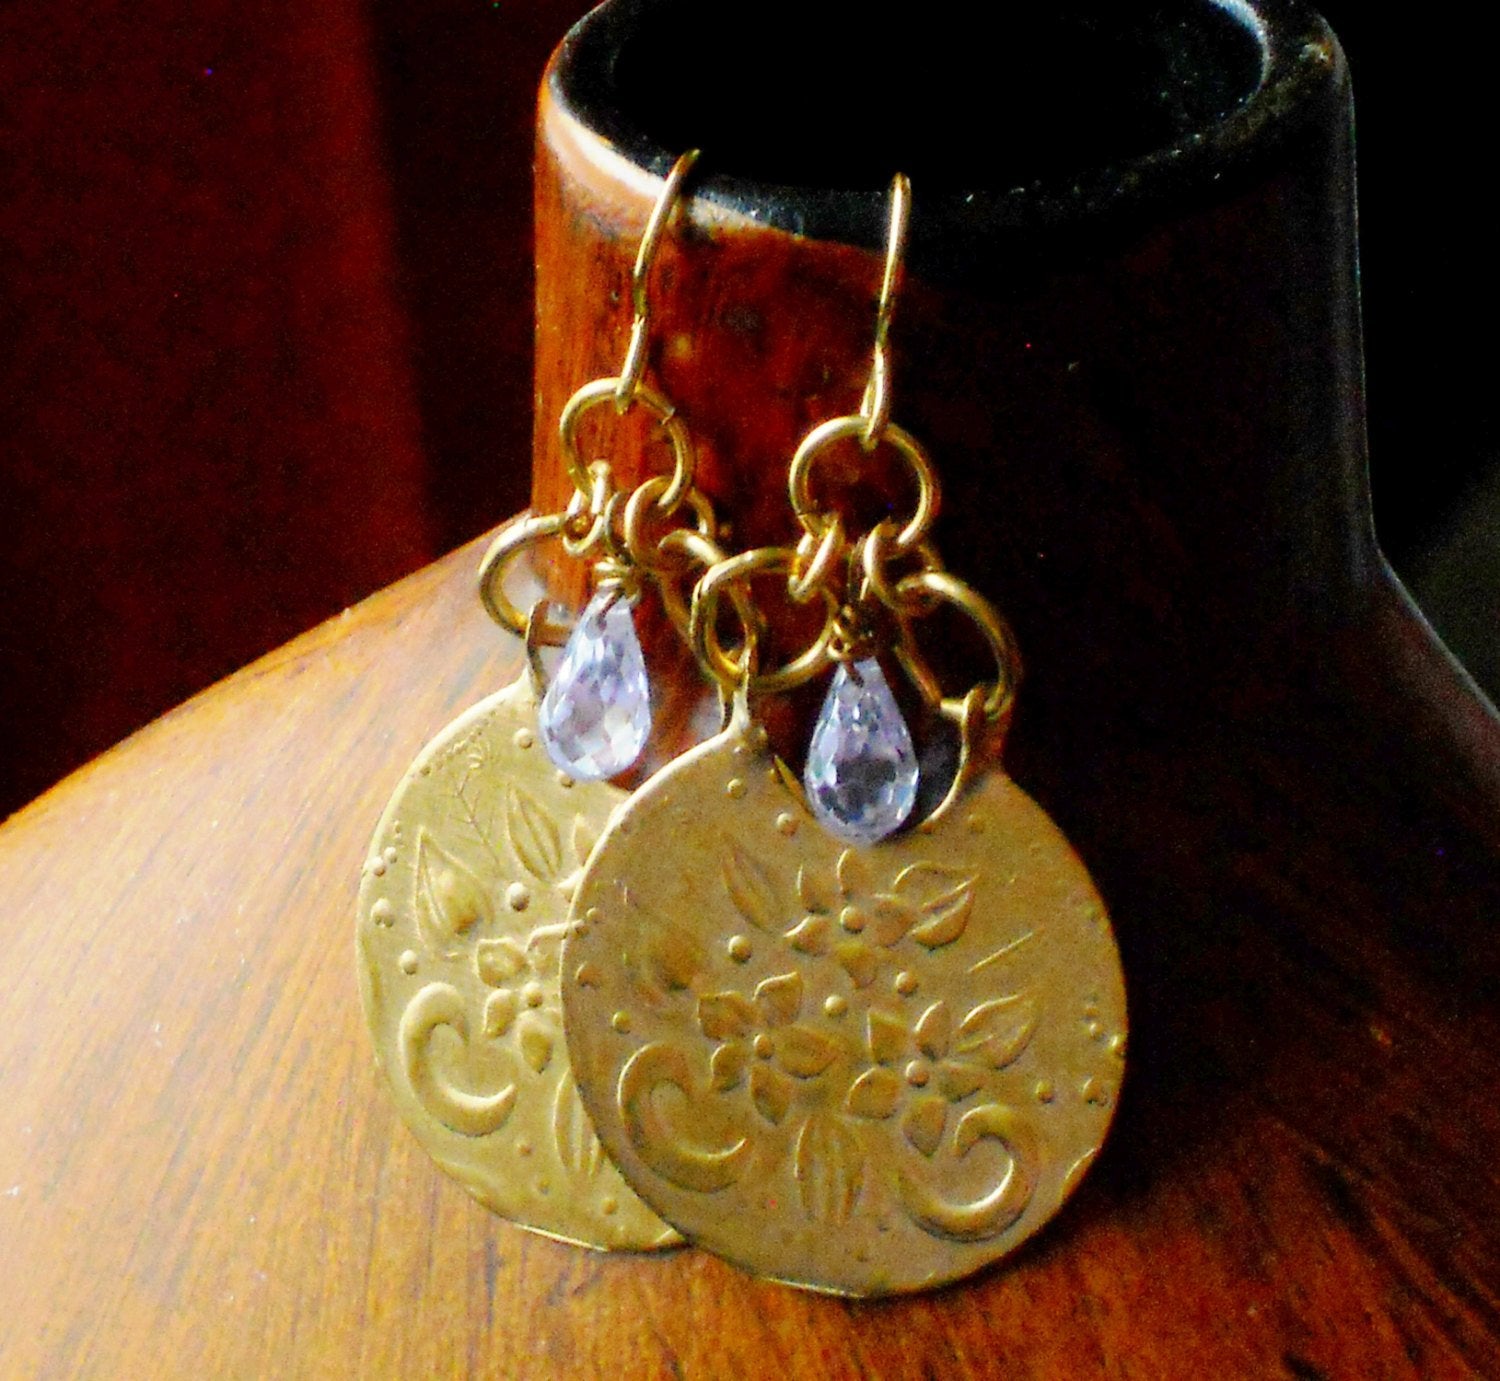 Vintage Inspired Embossed Solid Brass Crescent Lavender Swarovski Briolette Charm Necklace, ELO16922: Le Fleur